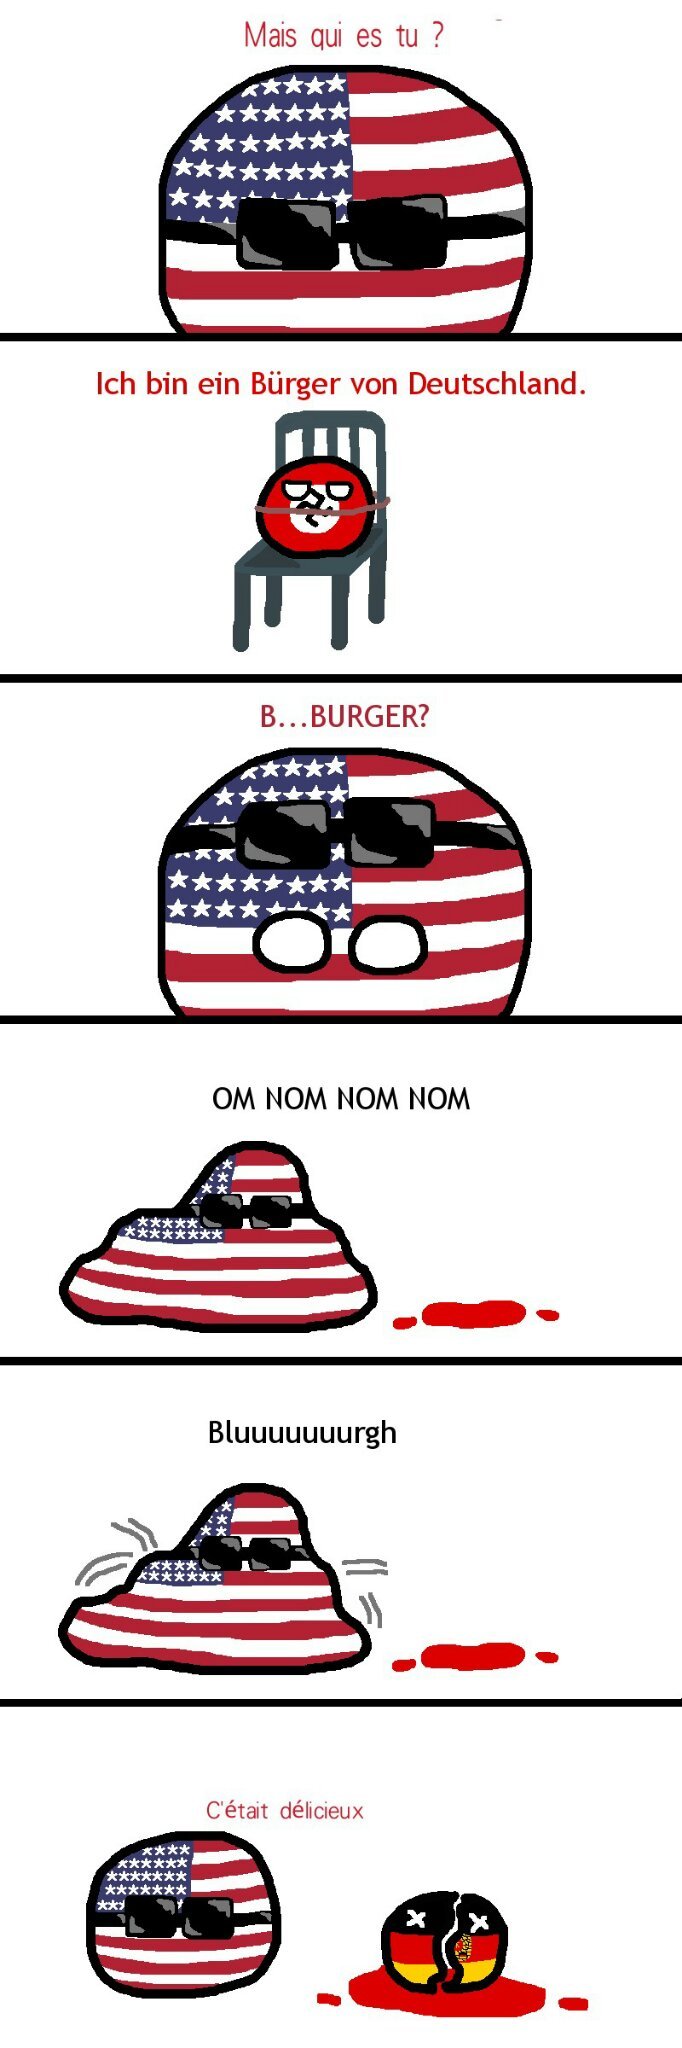 La joie des Burger - meme